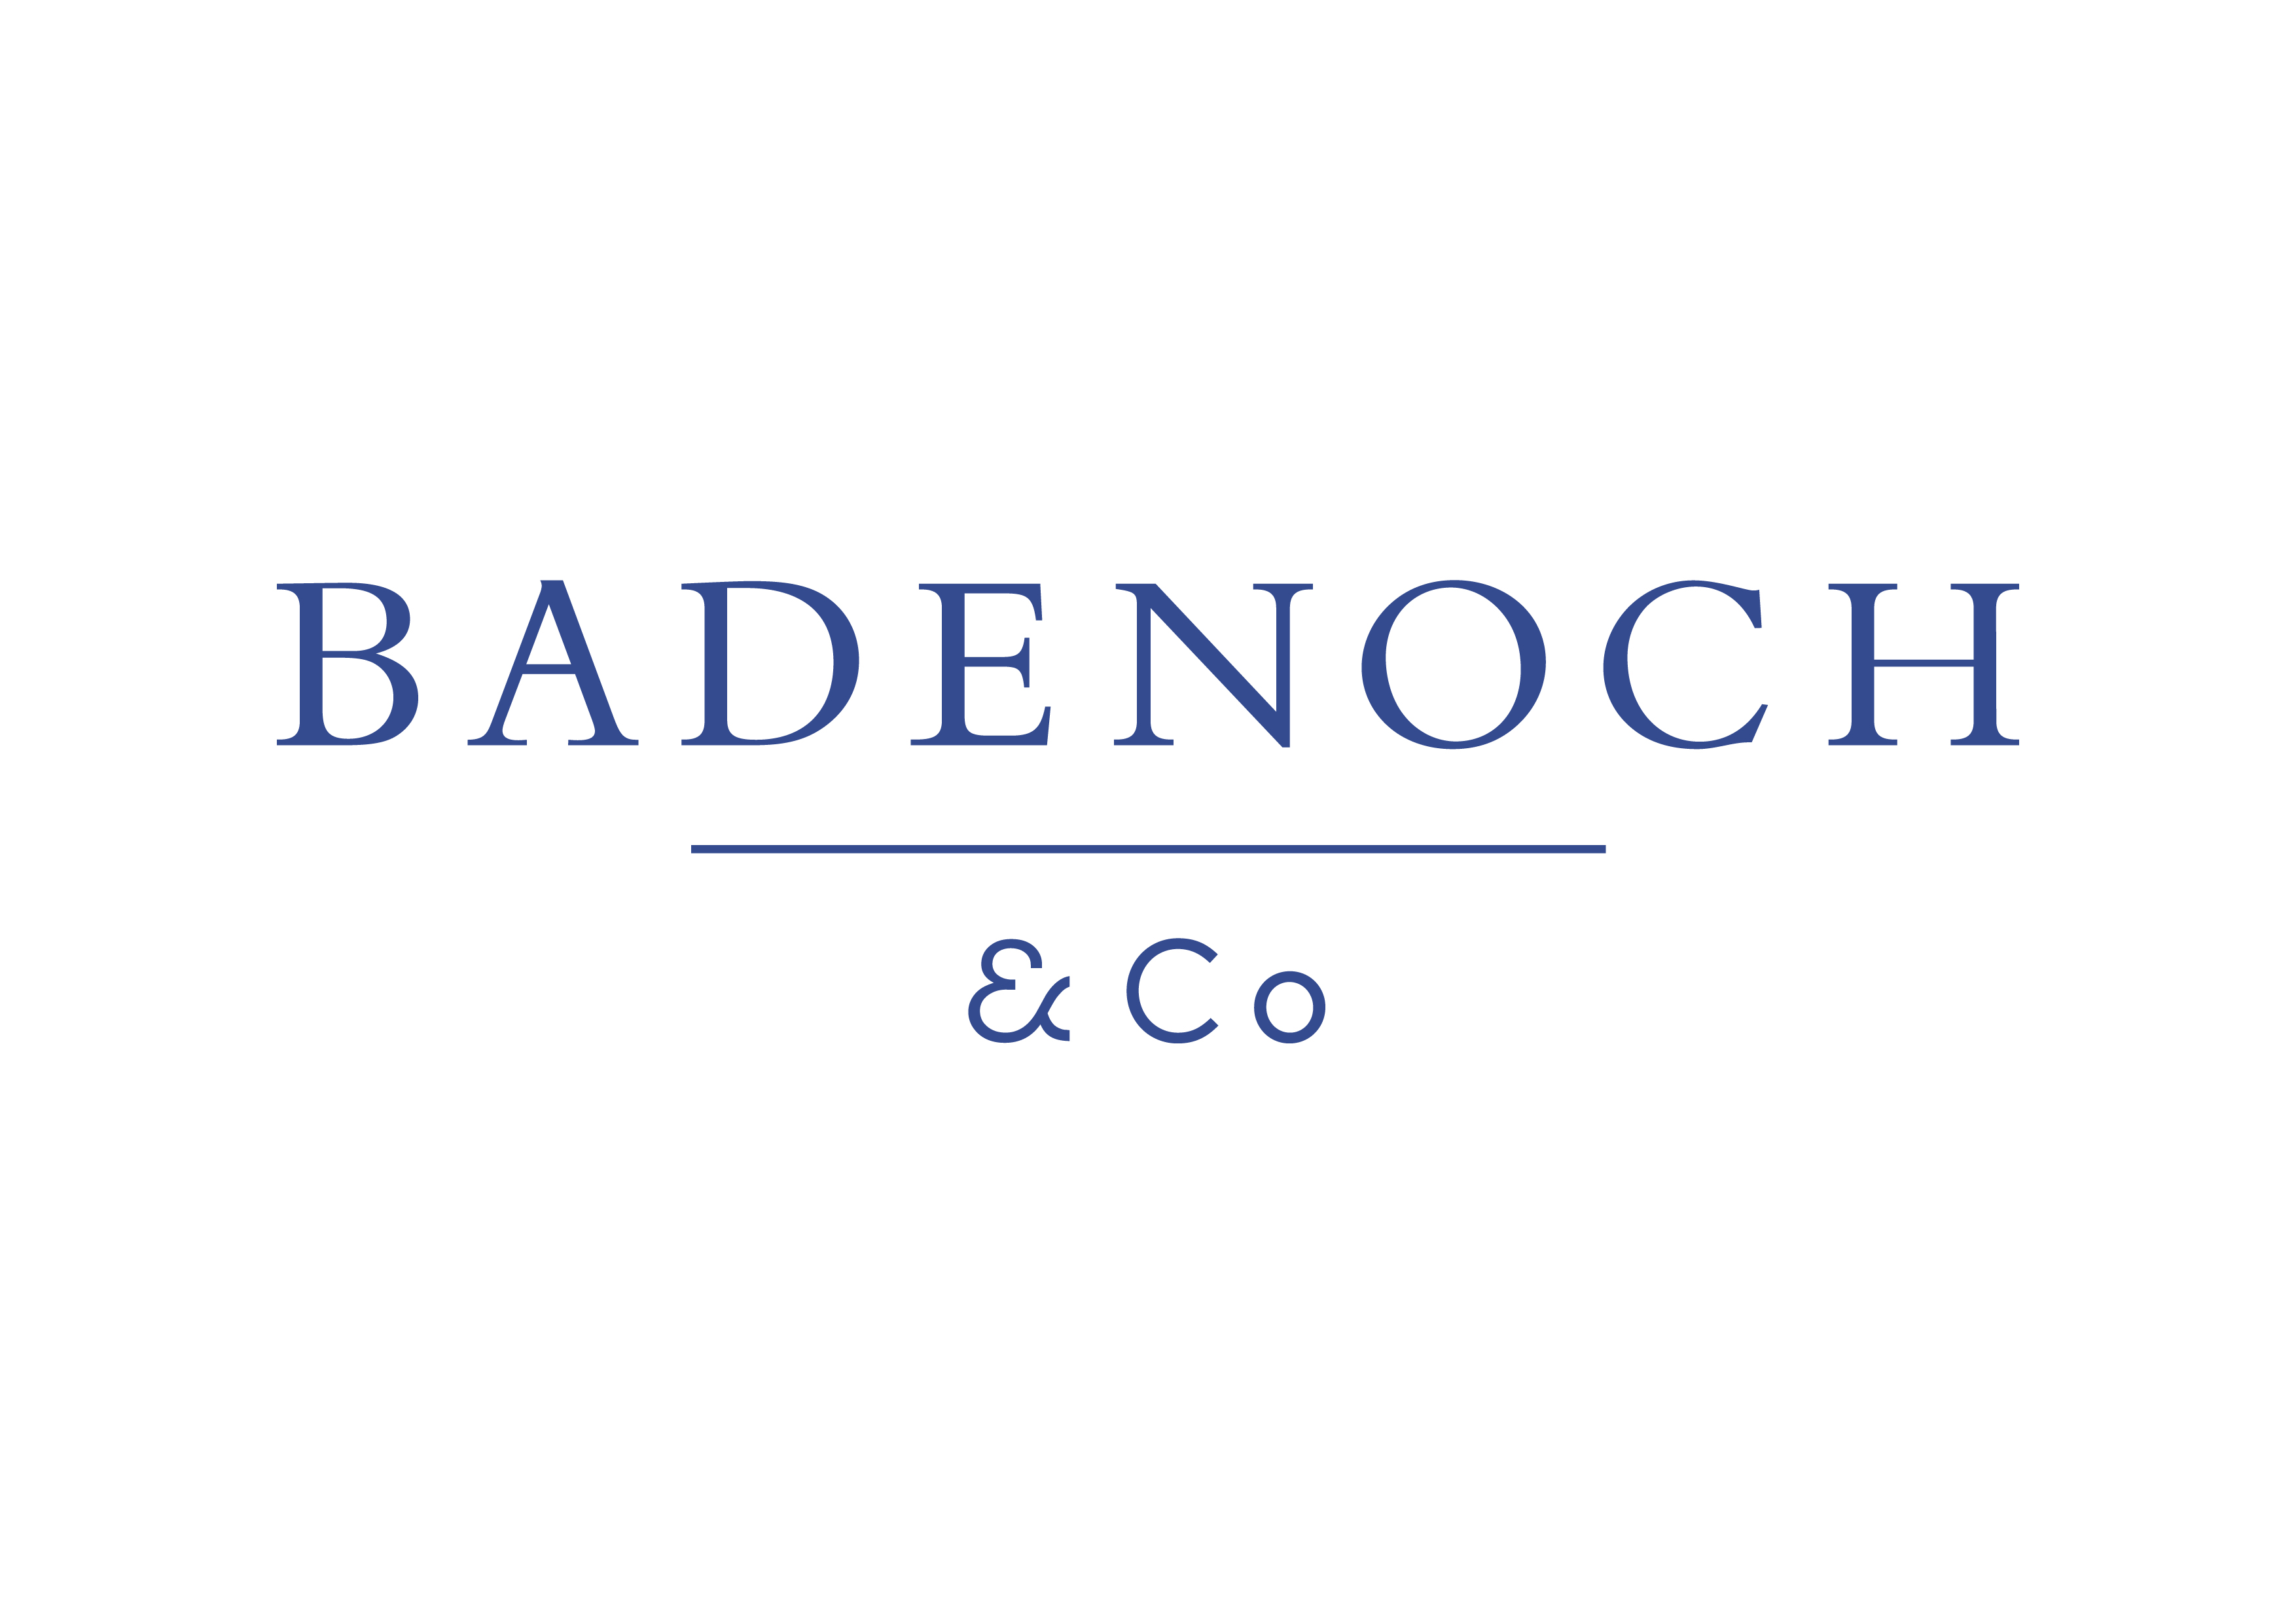 Badenoch and Co. logo